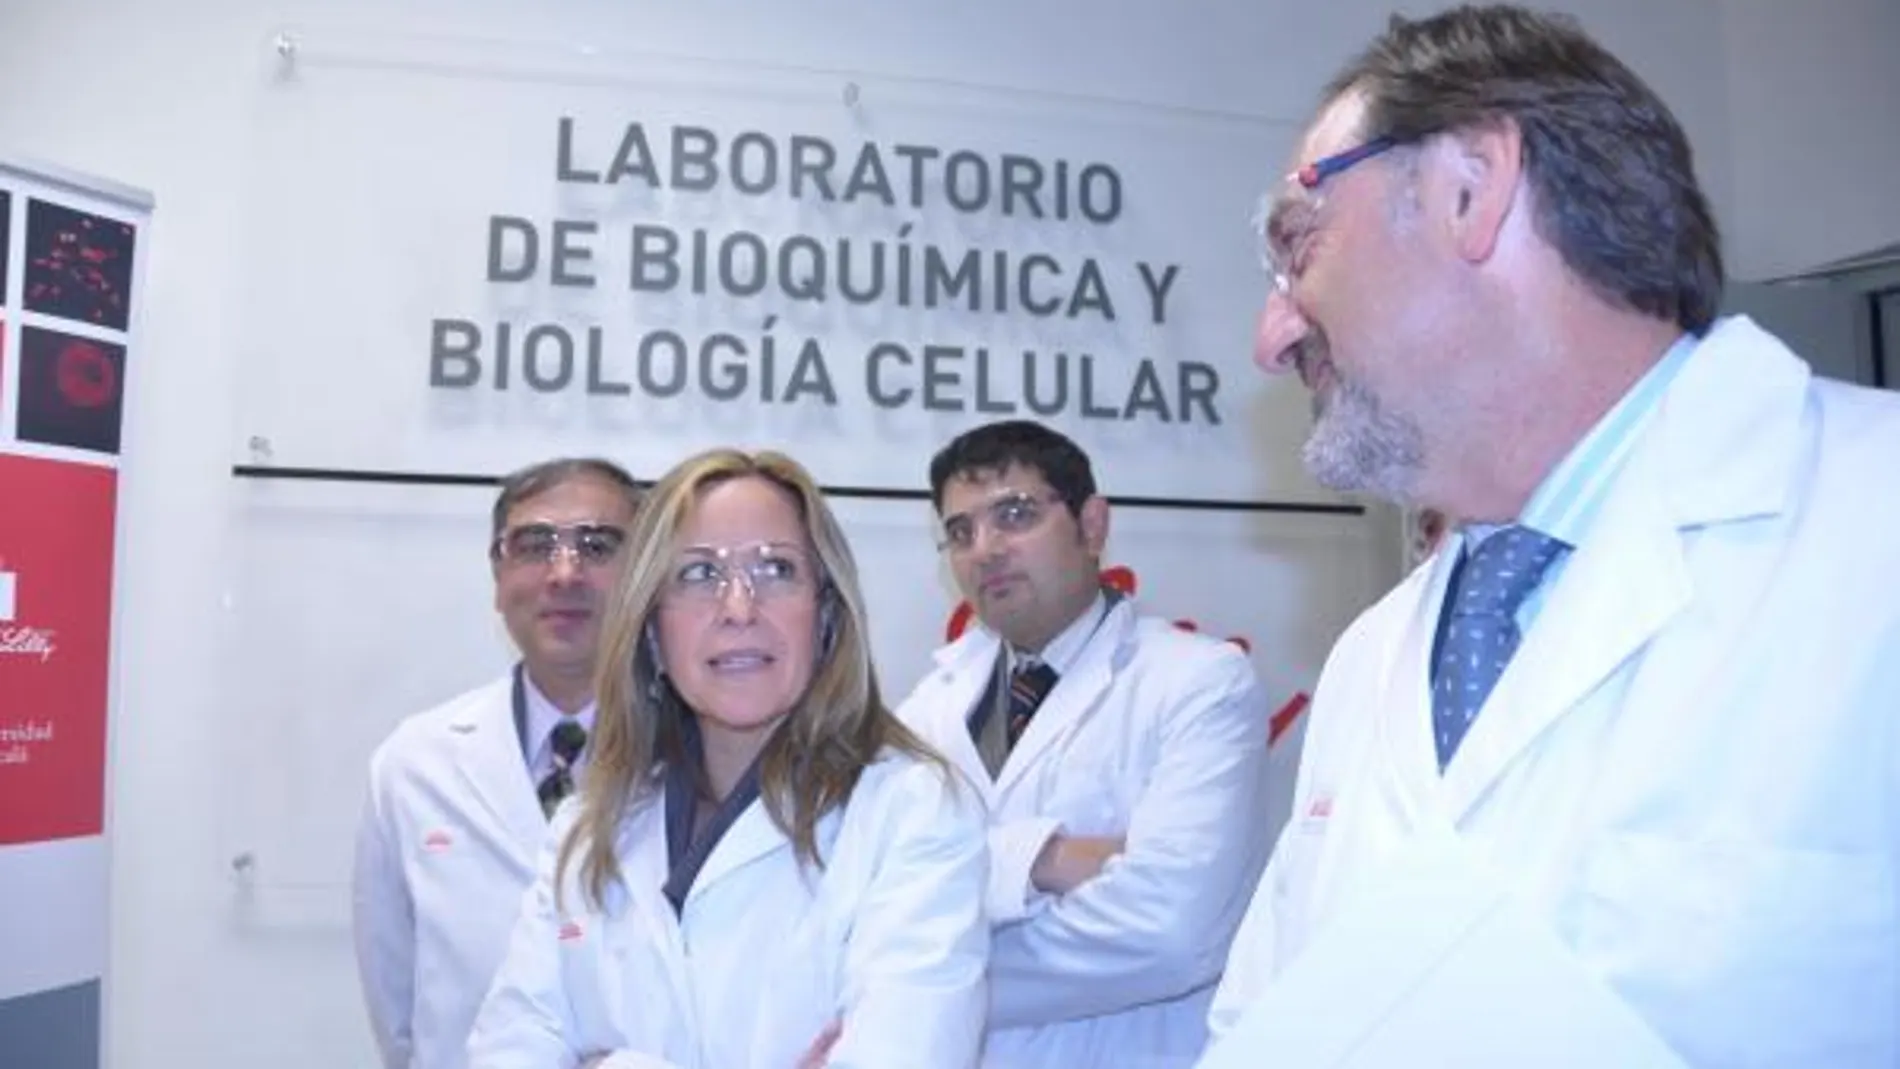 La Ministra de Sanidad inaugura un Laboratorio de Bioquímica y Biología Celular. Fuente: Inforpress